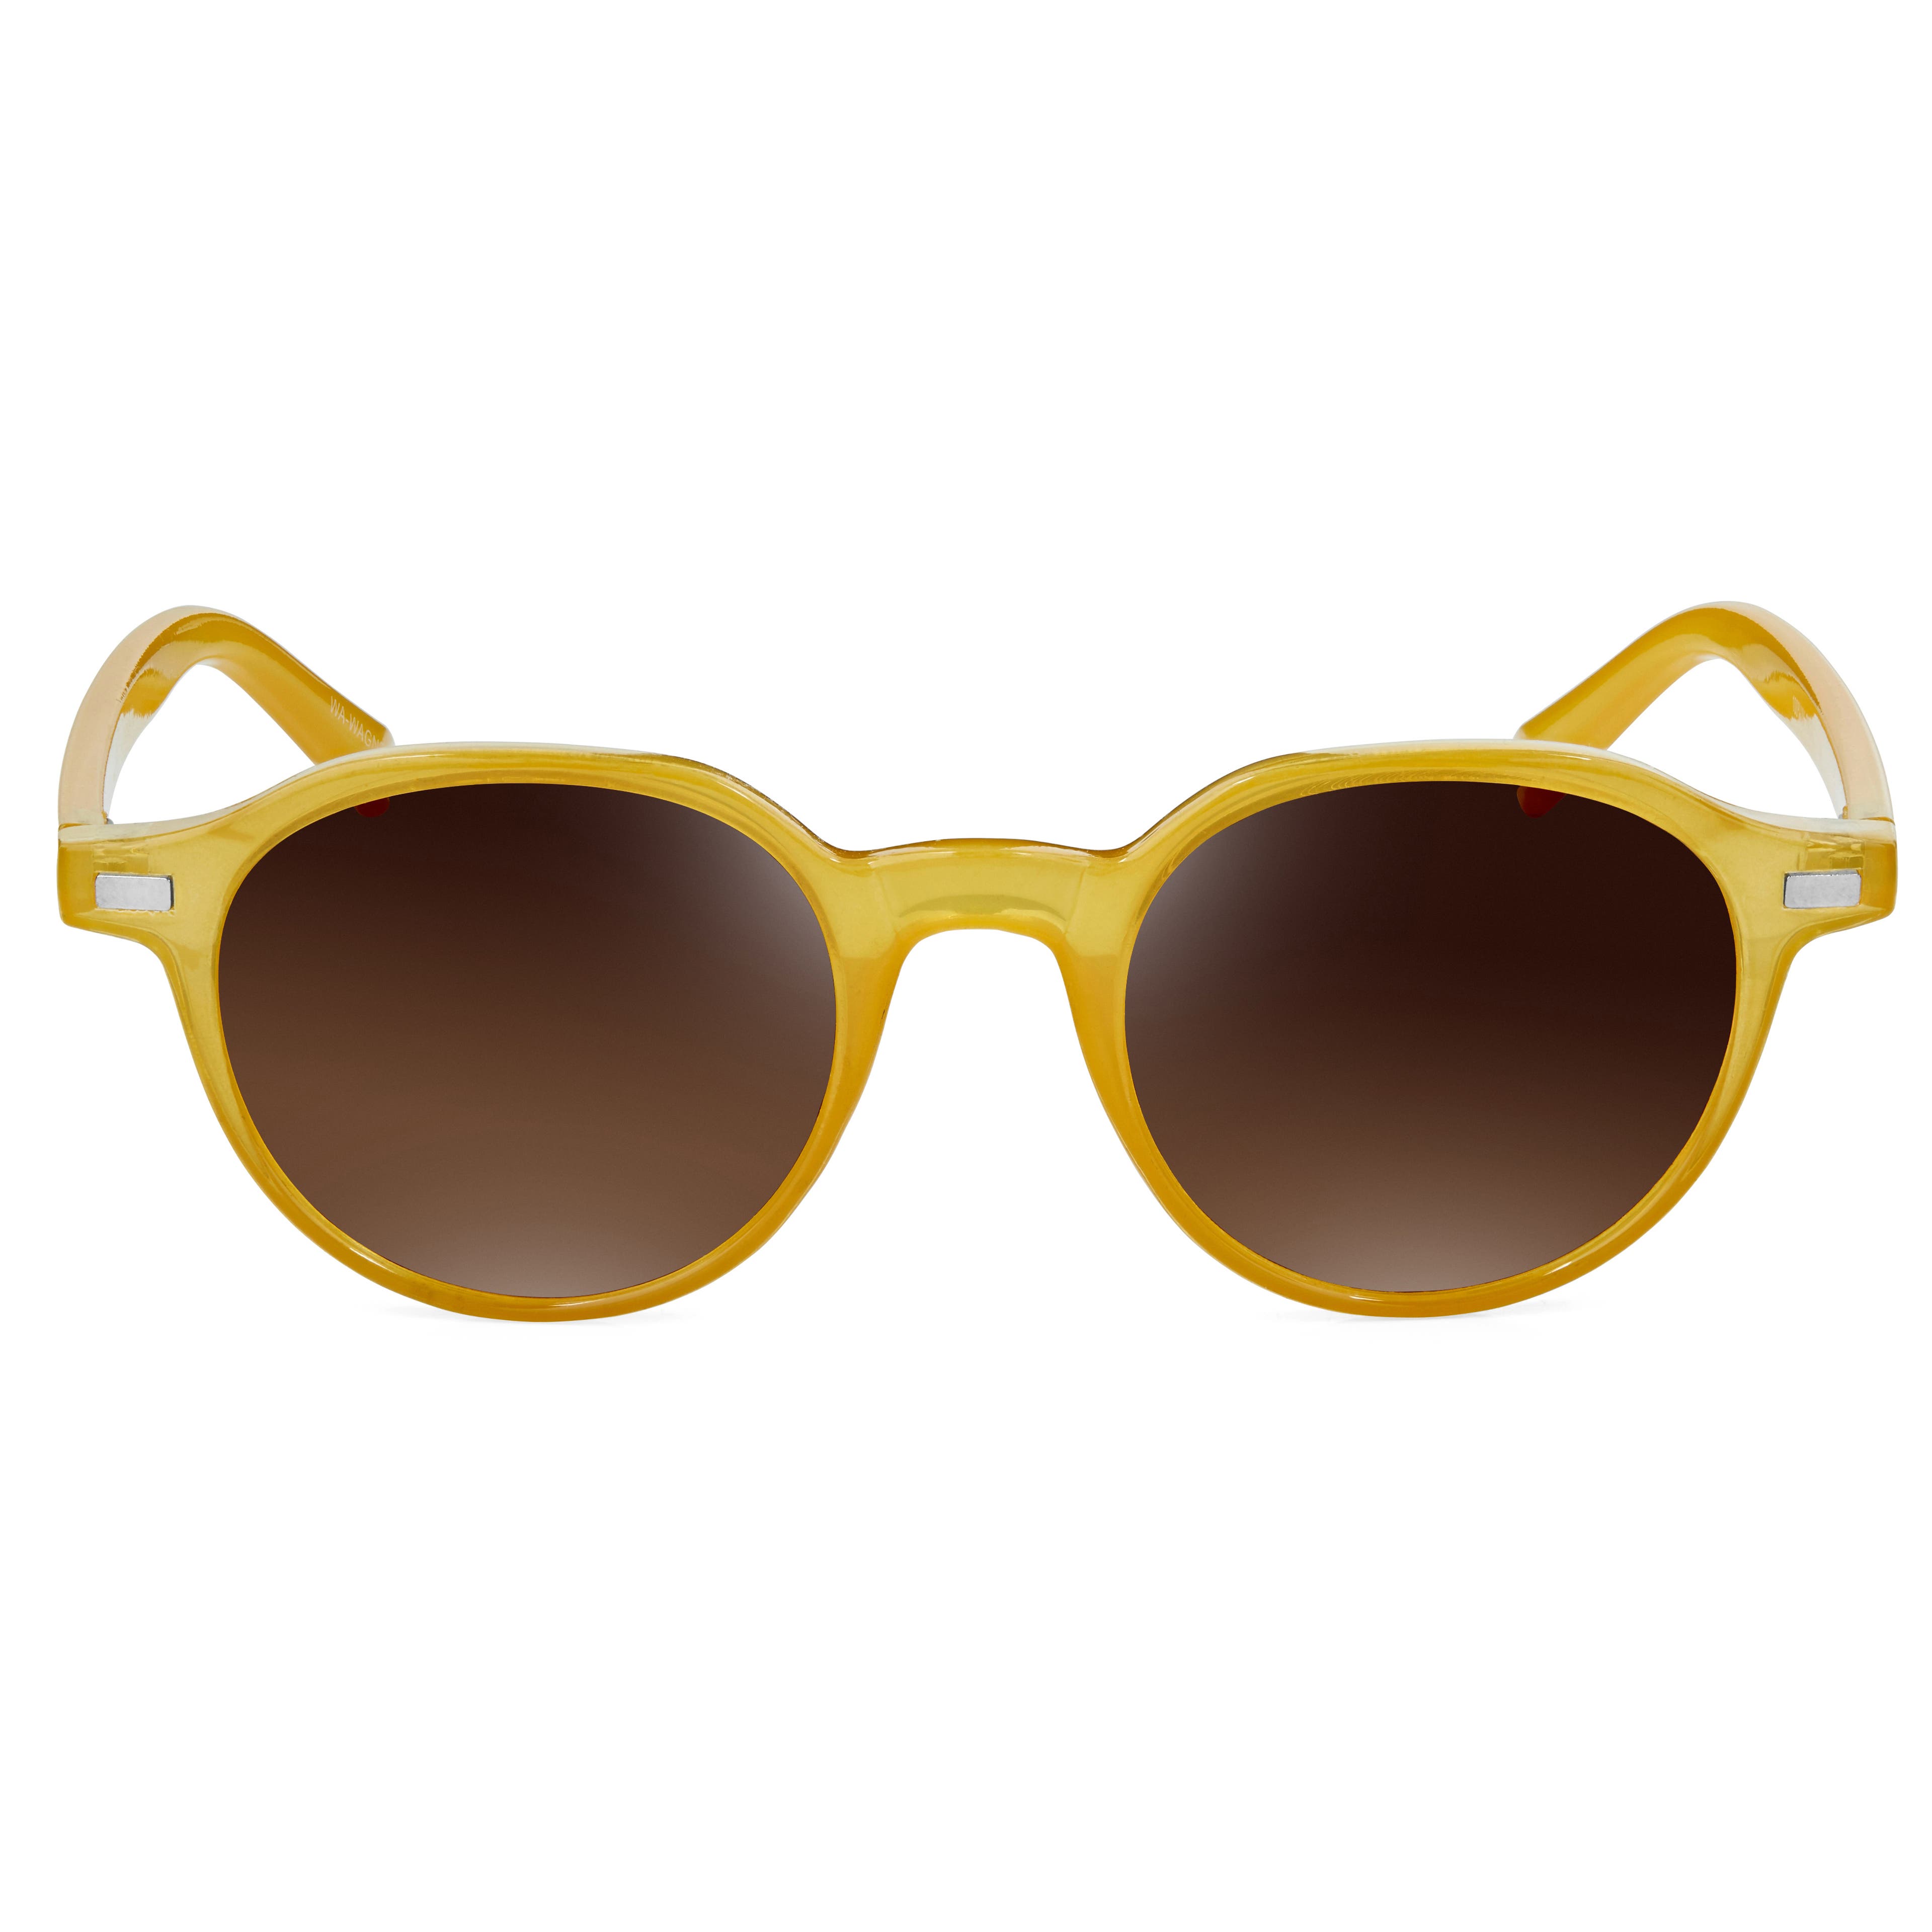 Žluté a hnědé sluneční brýle Wagner 